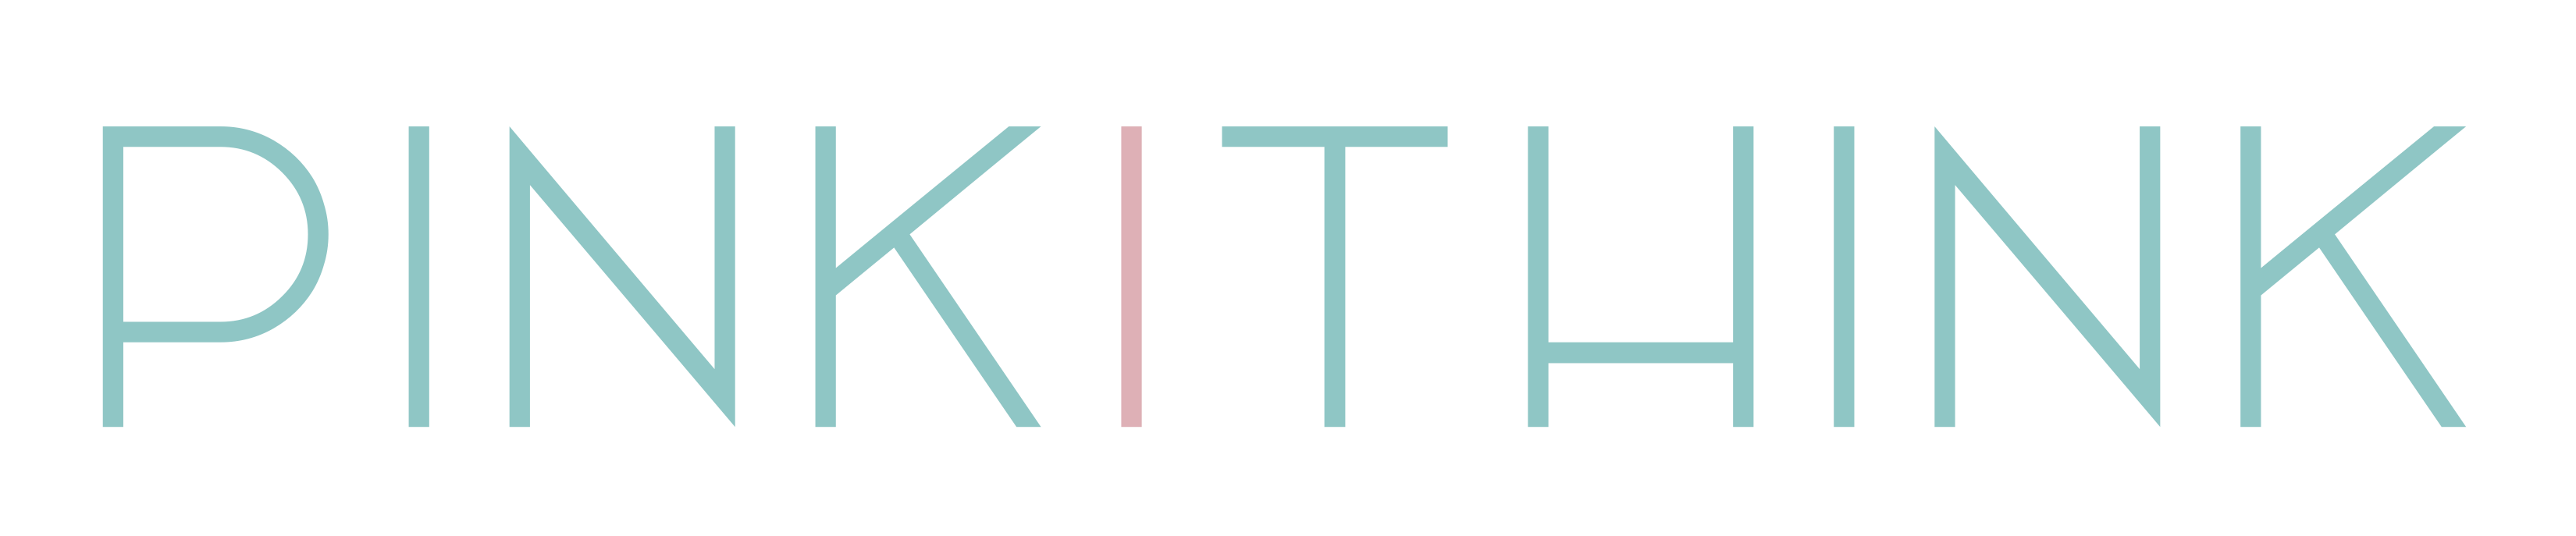 pinkithink logo